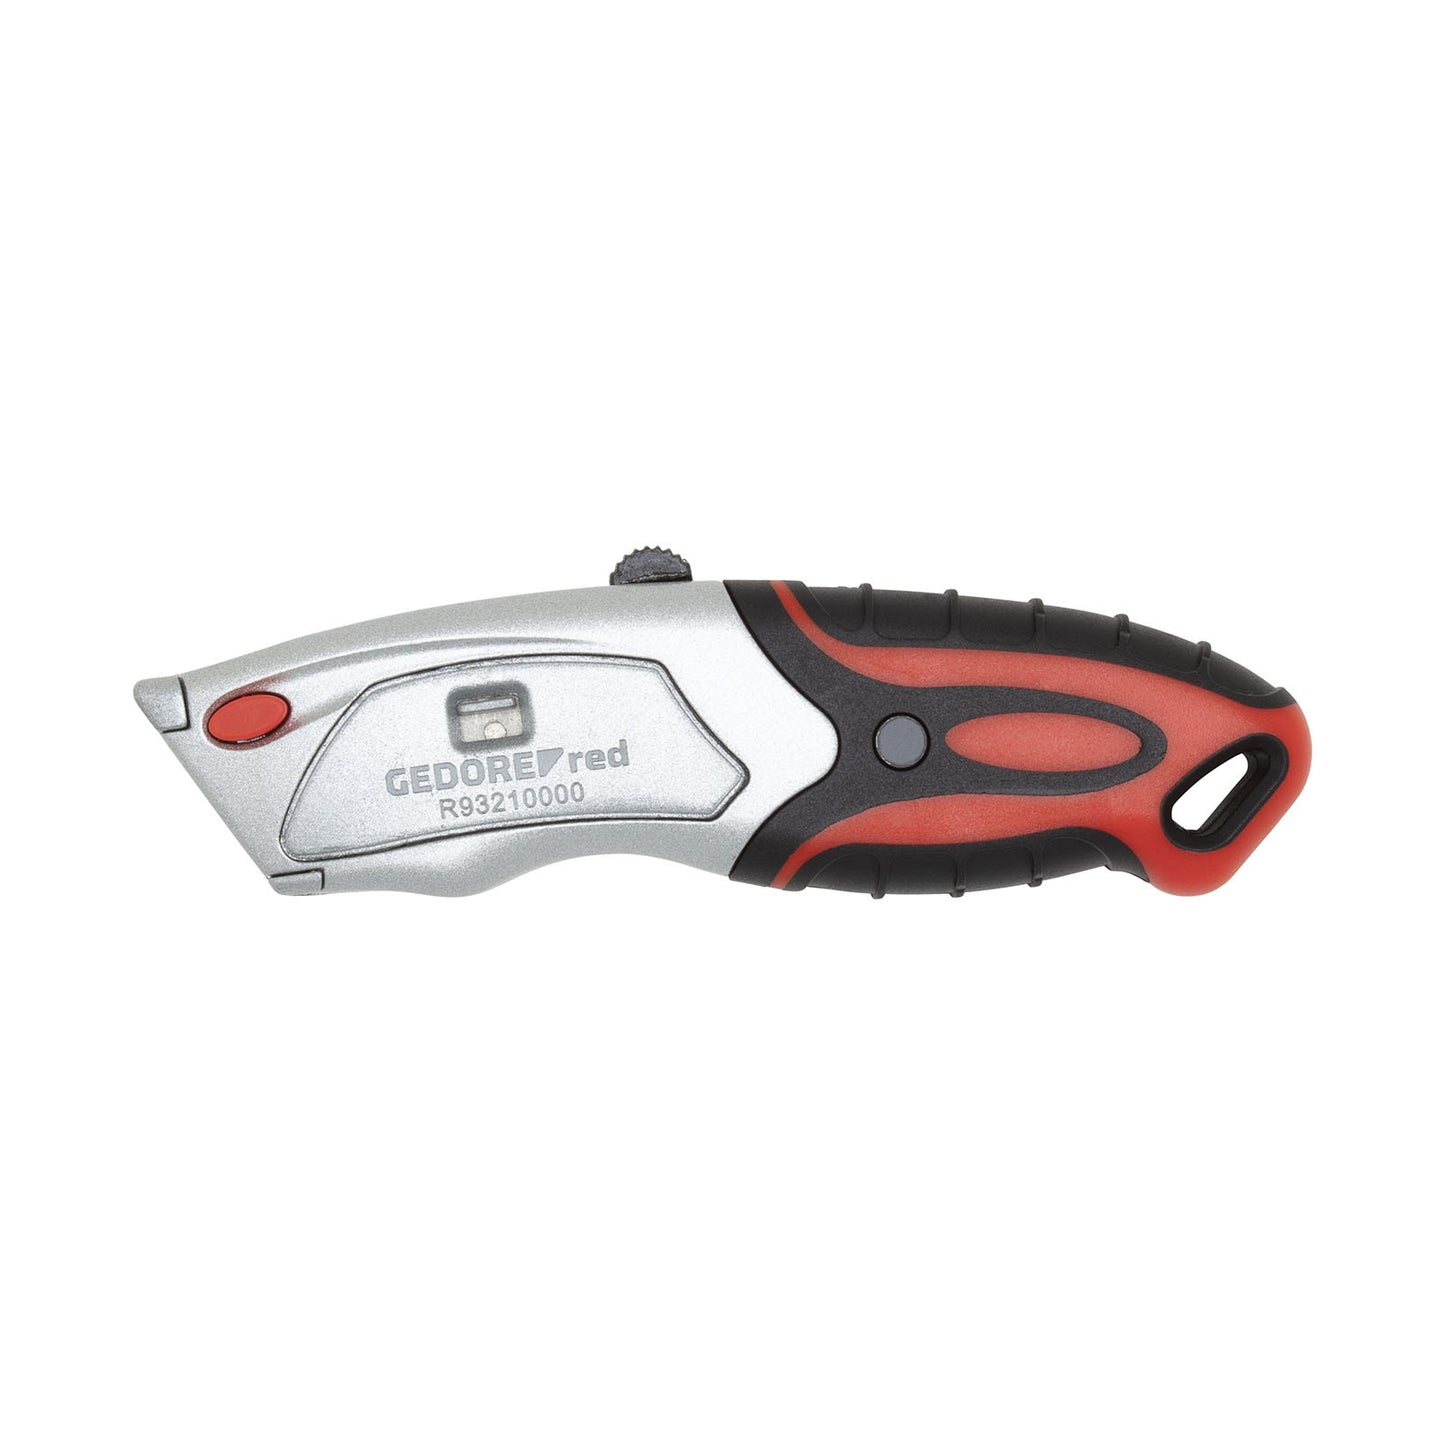 GEDORE red R93210000 - Cúter profesional con 6 cuchillas y mango multicomponente (3301598)